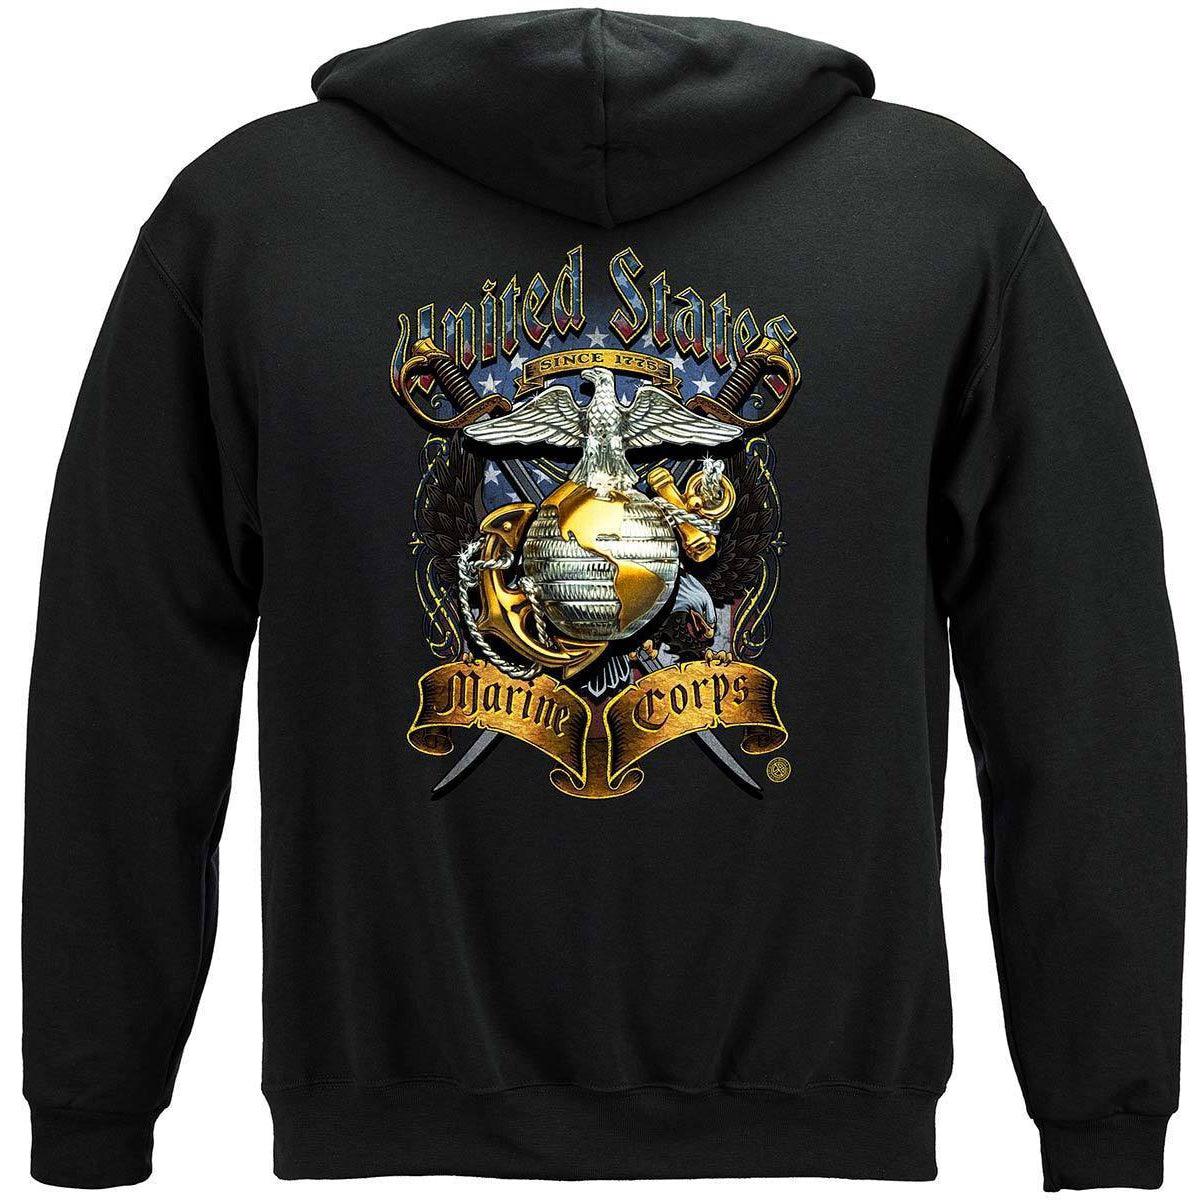 USMC Crossed Swords T-Shirt - Military Republic